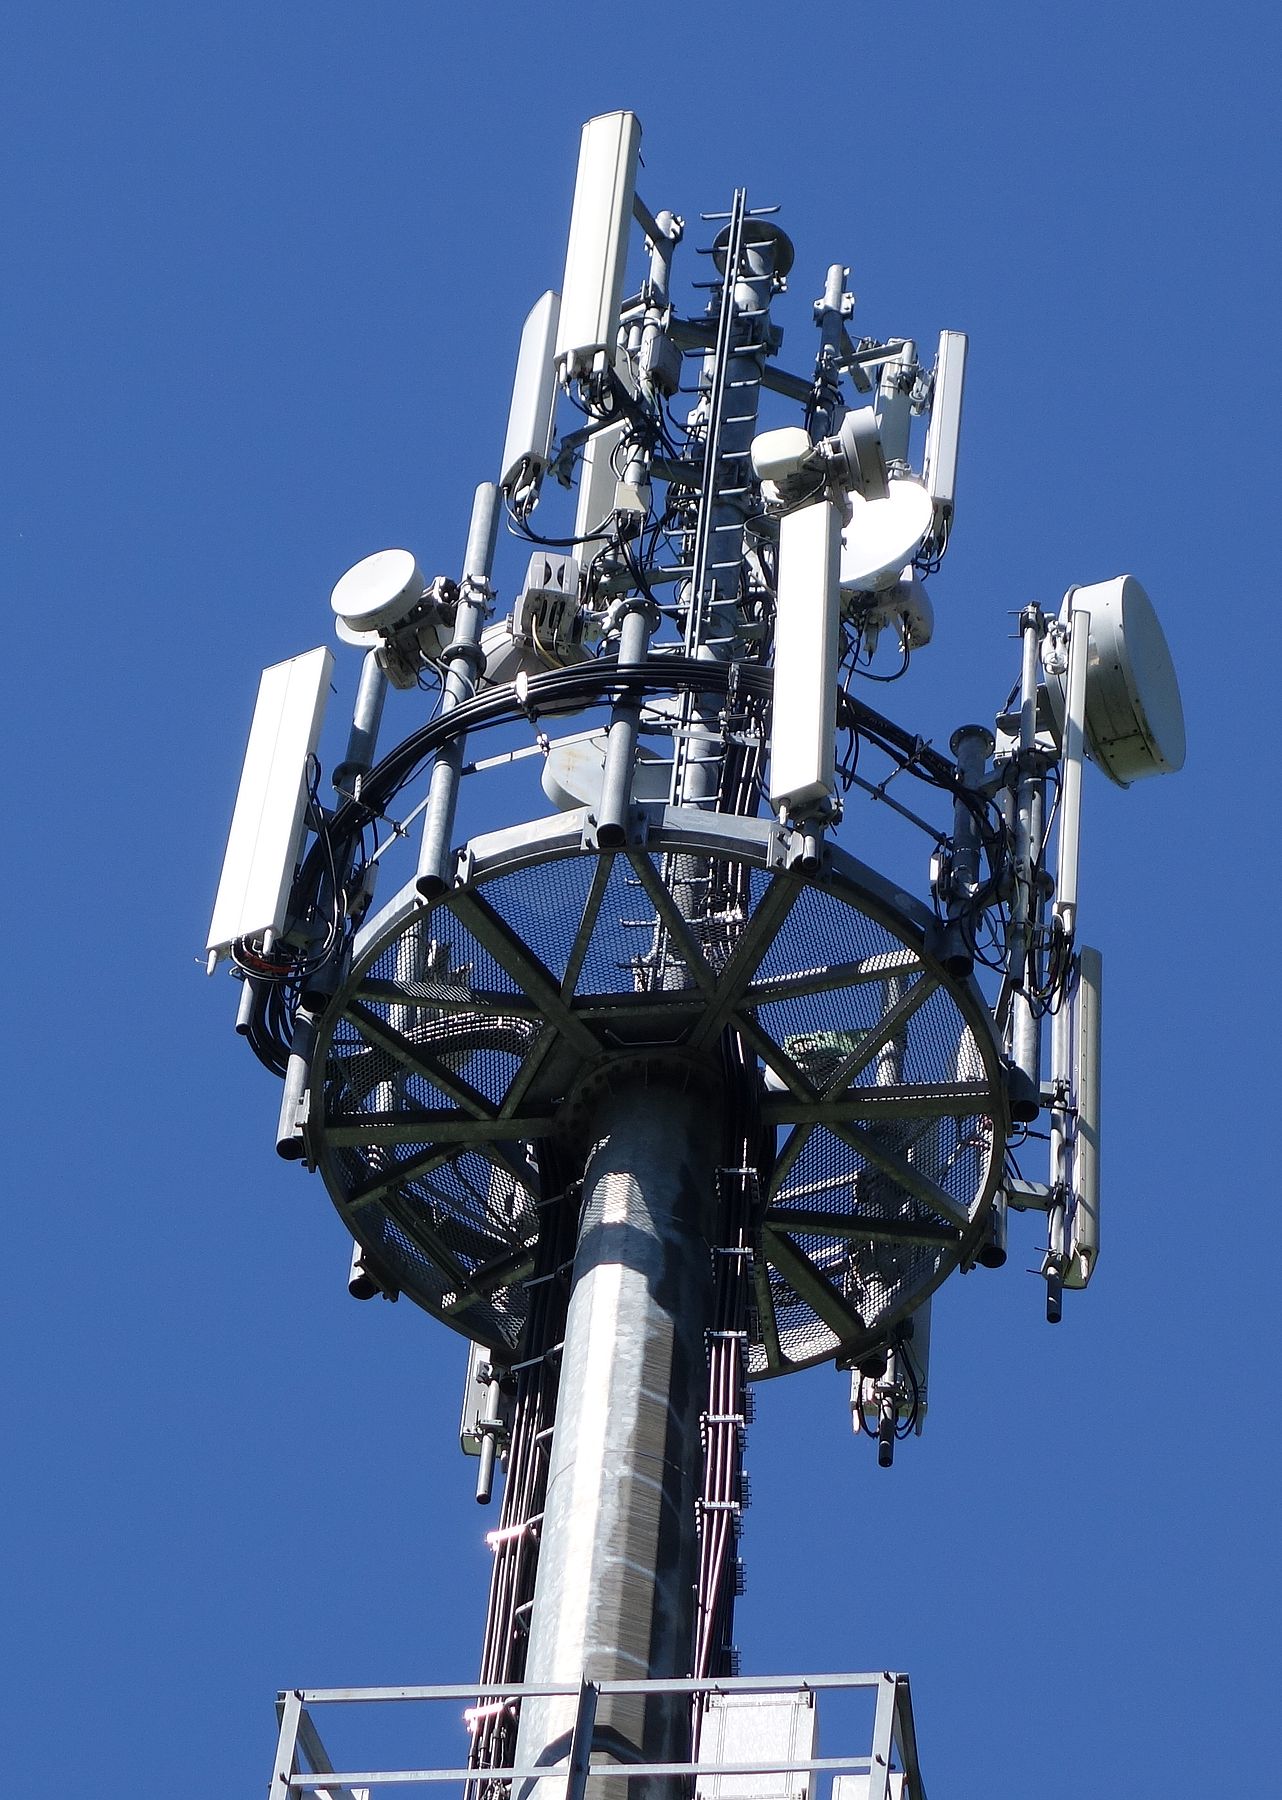 Die Antennen von Vodafone, Wind und Tim im Mai 2015